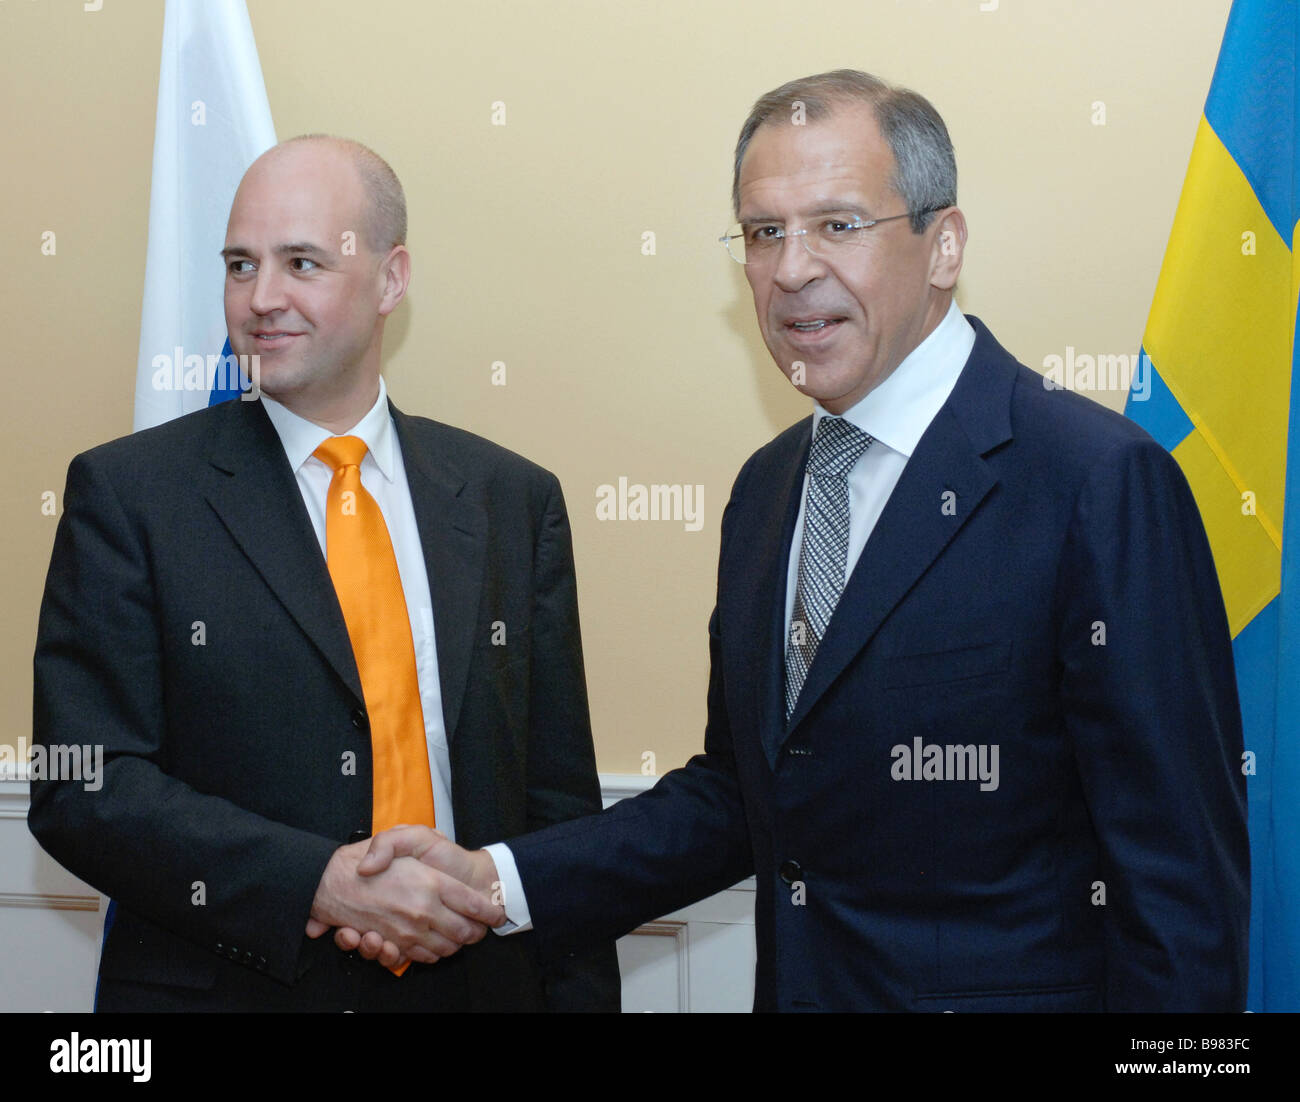 Da sinistra a destra il Primo ministro svedese Fredrik Reinfeldt e il ministro degli affari esteri russo Sergei Lavrov Foto Stock